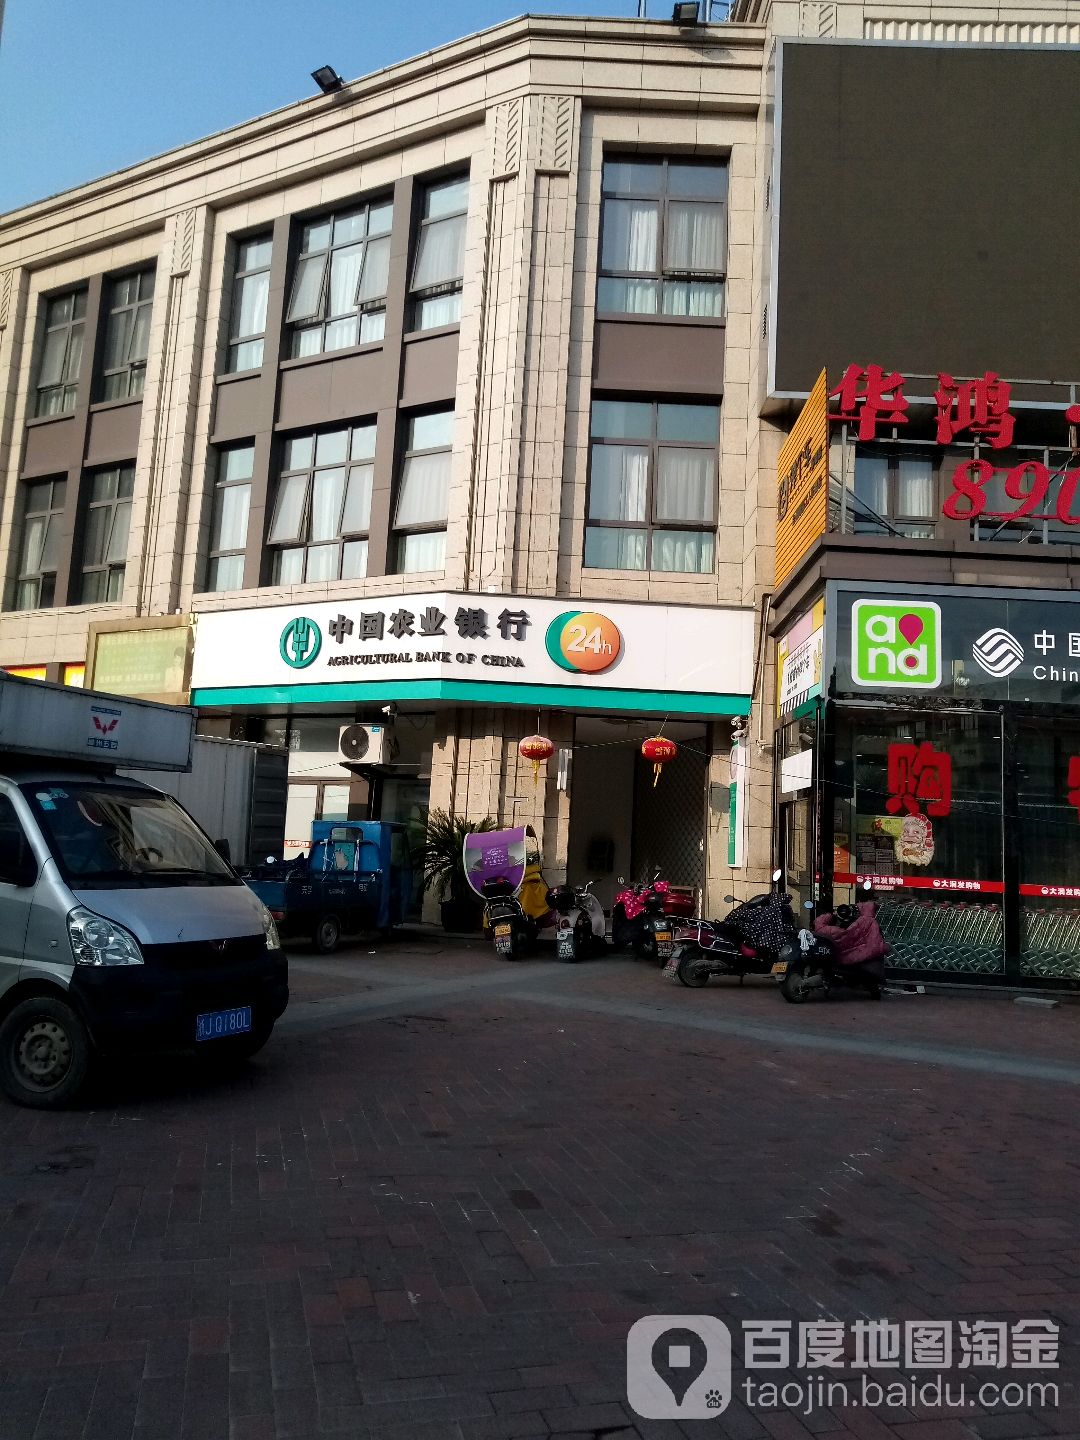 中国农业银行24小时自助银行服务(工人东路店)